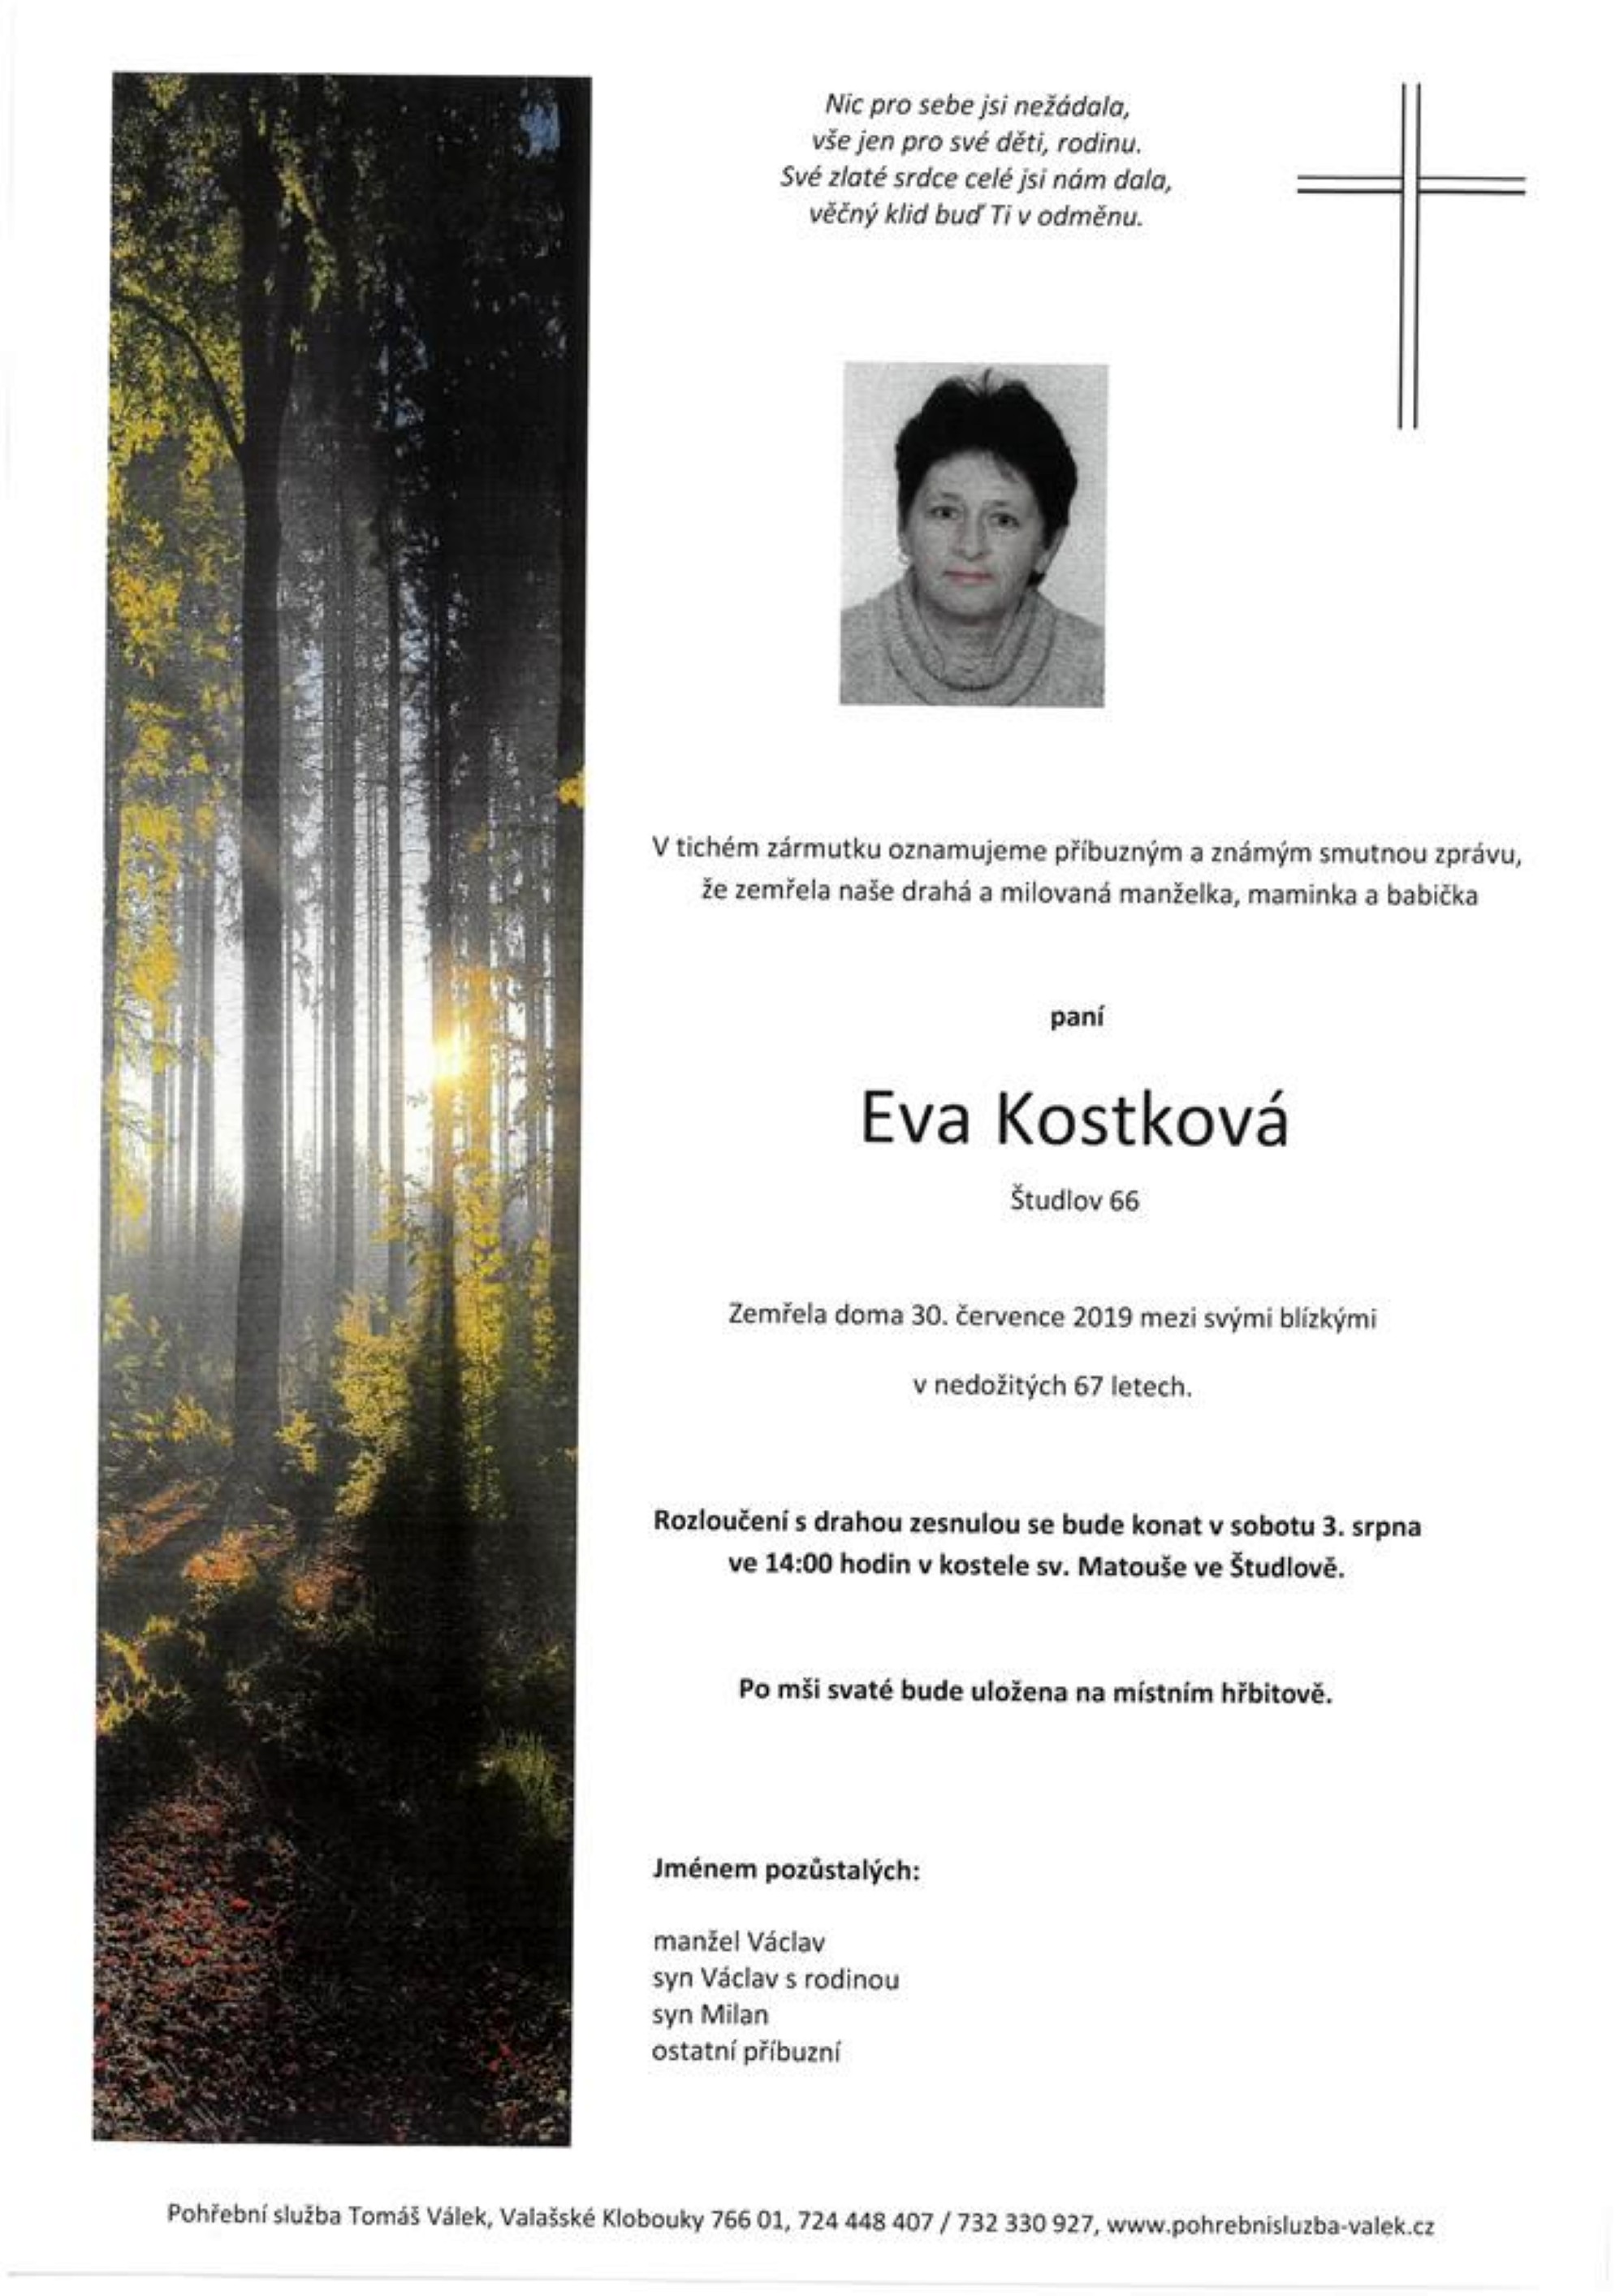 Eva Kostková